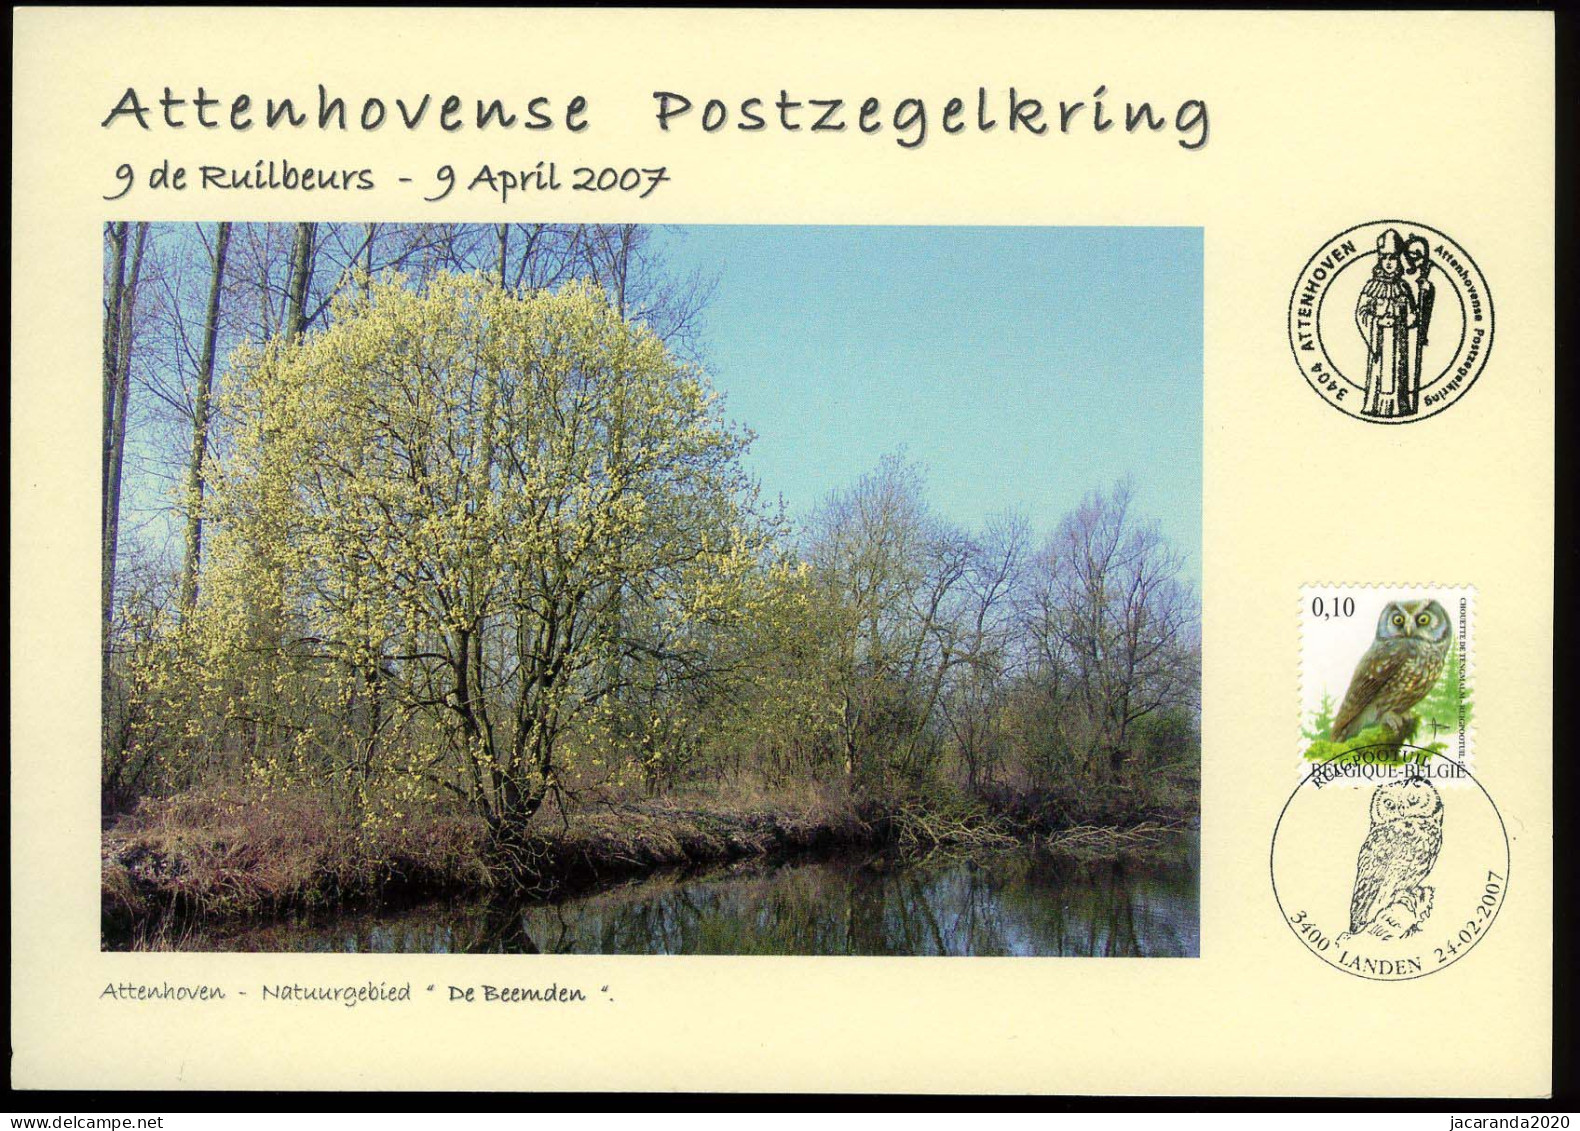 België 3624 - Ruigpootuil - Op Herdenkingskaart - 9de Ruilbeurs Attenhovense Postzegelkring 2007 - De Beemden - Buzin - Souvenir Cards - Joint Issues [HK]